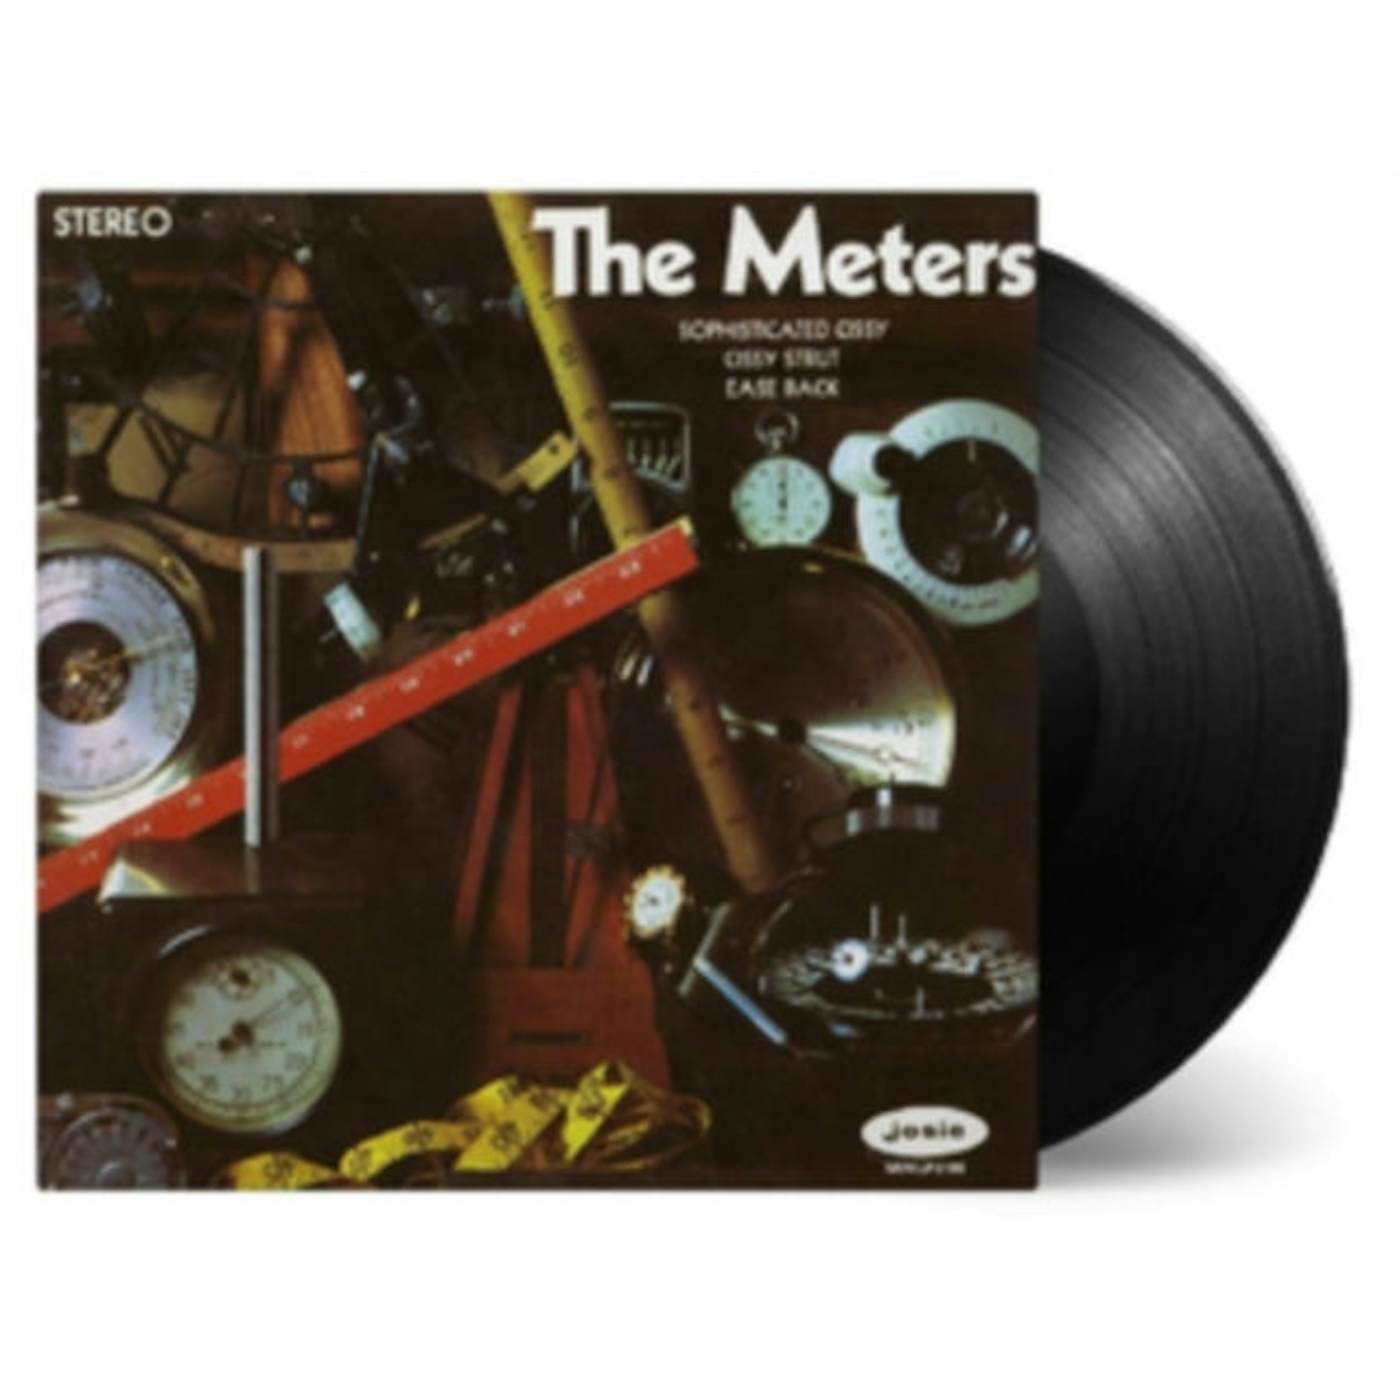 Meters LP Vinyl Record - The Meters